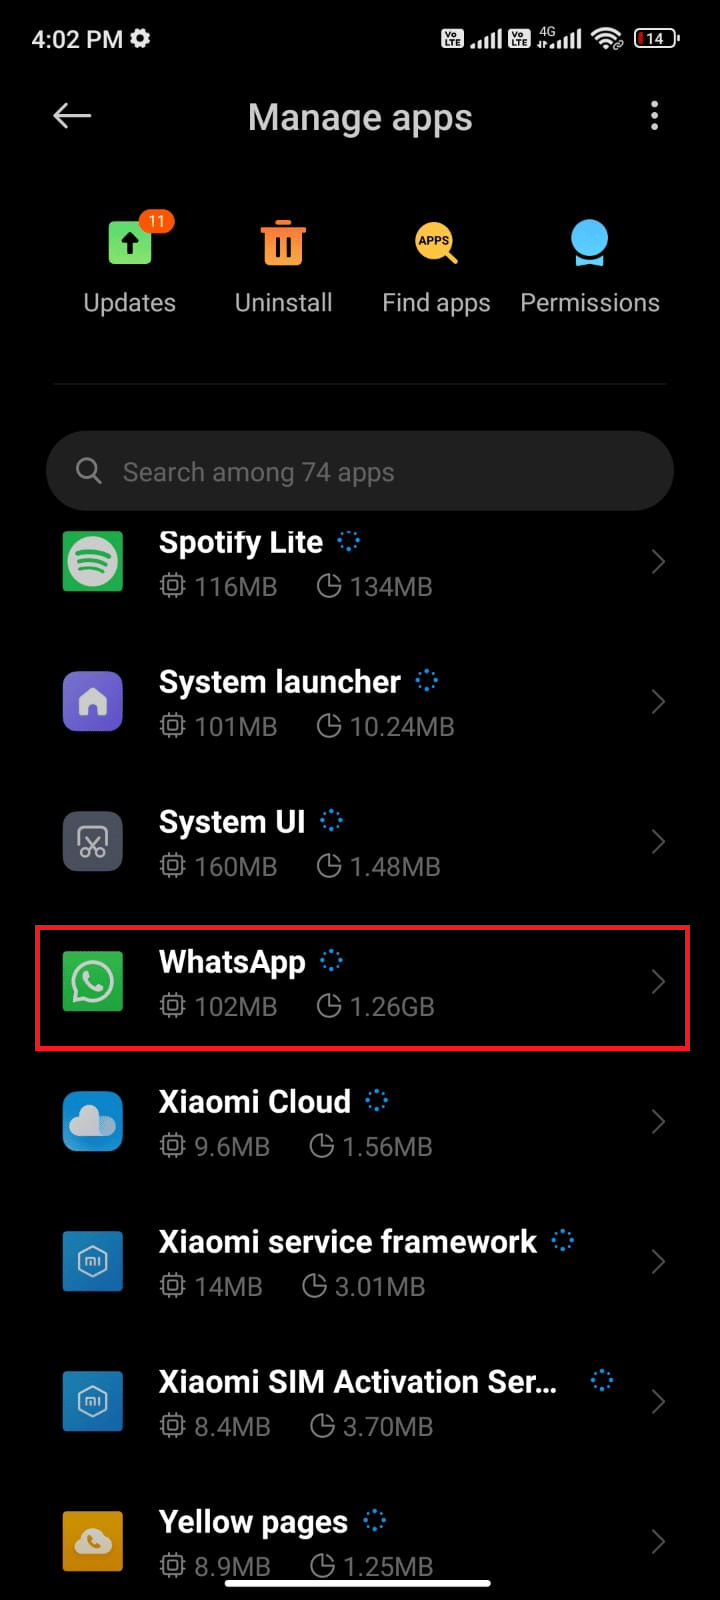 اضغط على إدارة التطبيقات متبوعًا بـ WhatsApp